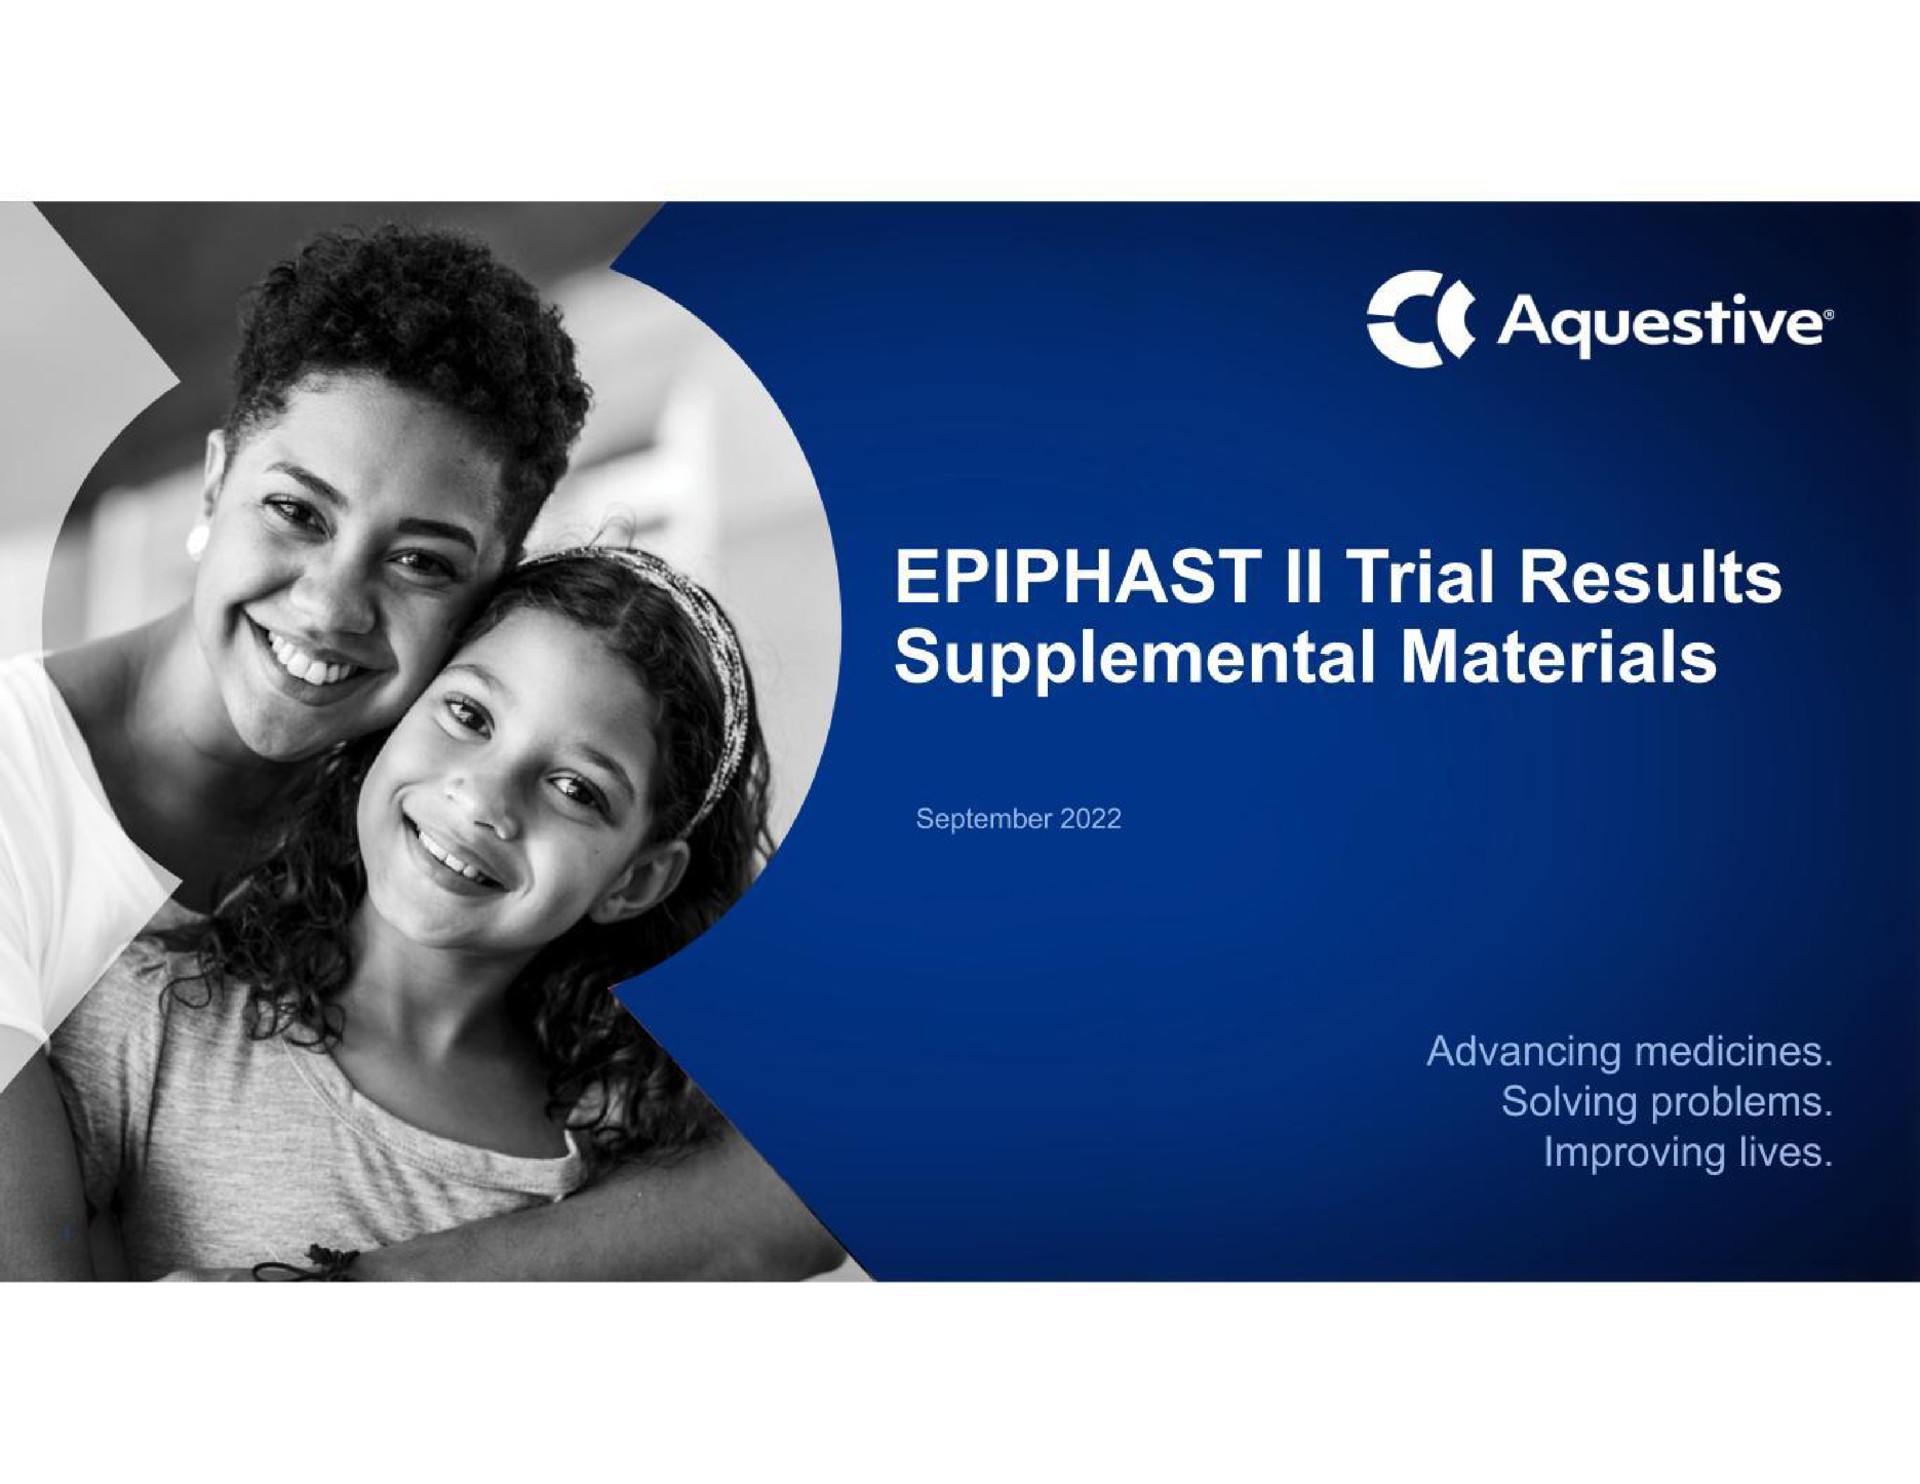 trial results supplemental materials advancing medicines solving problems improving lives | Aquestive Therapeutics